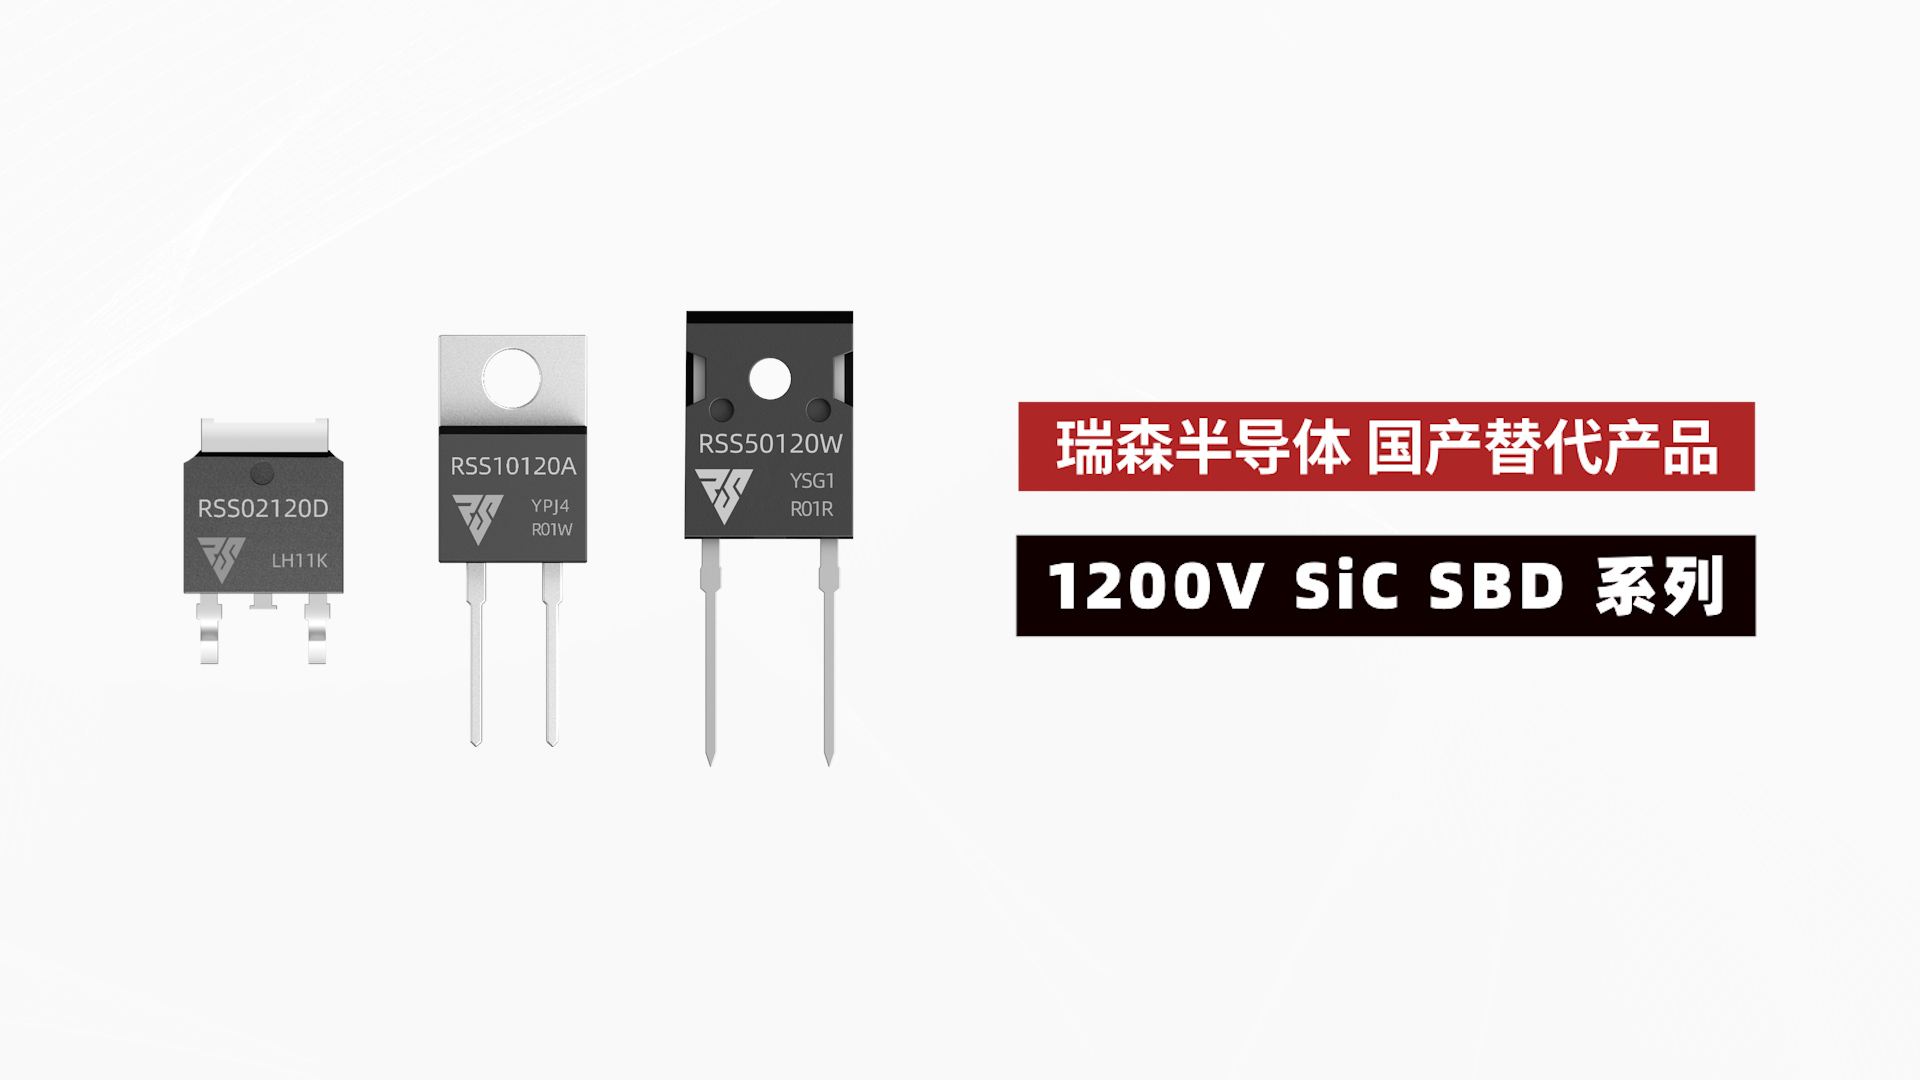 1200V SiC SBD系列在各大领域的应用